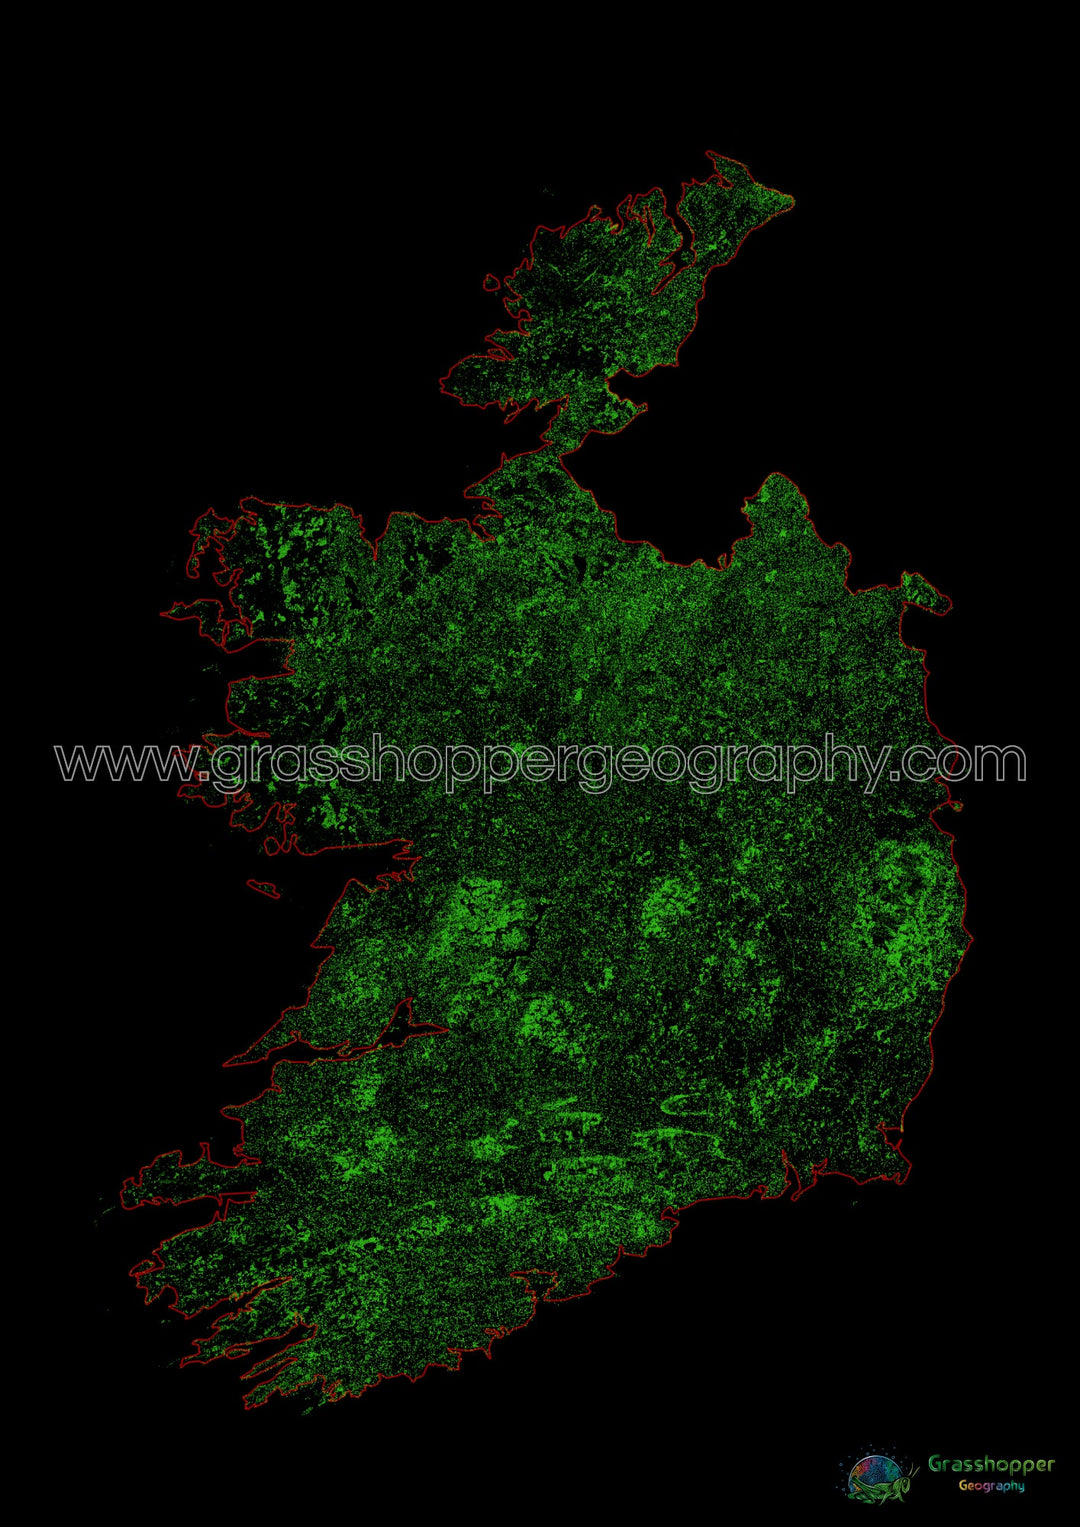 Irlanda - Mapa de cobertura forestal - Impresión de bellas artes